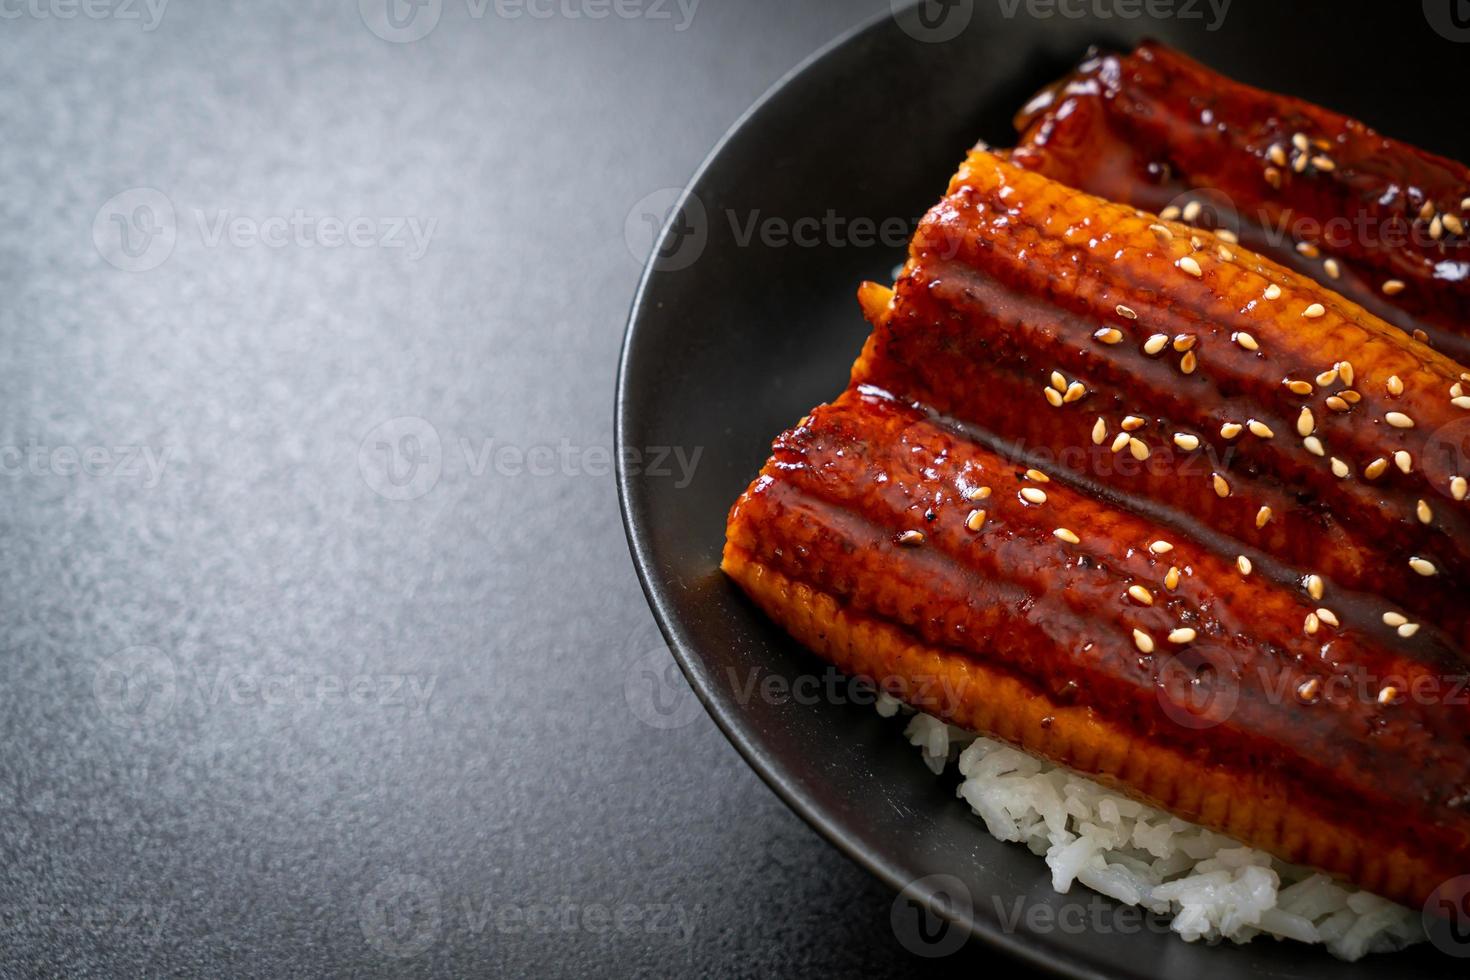 anguille japonaise grillée avec bol de riz ou unagi don photo